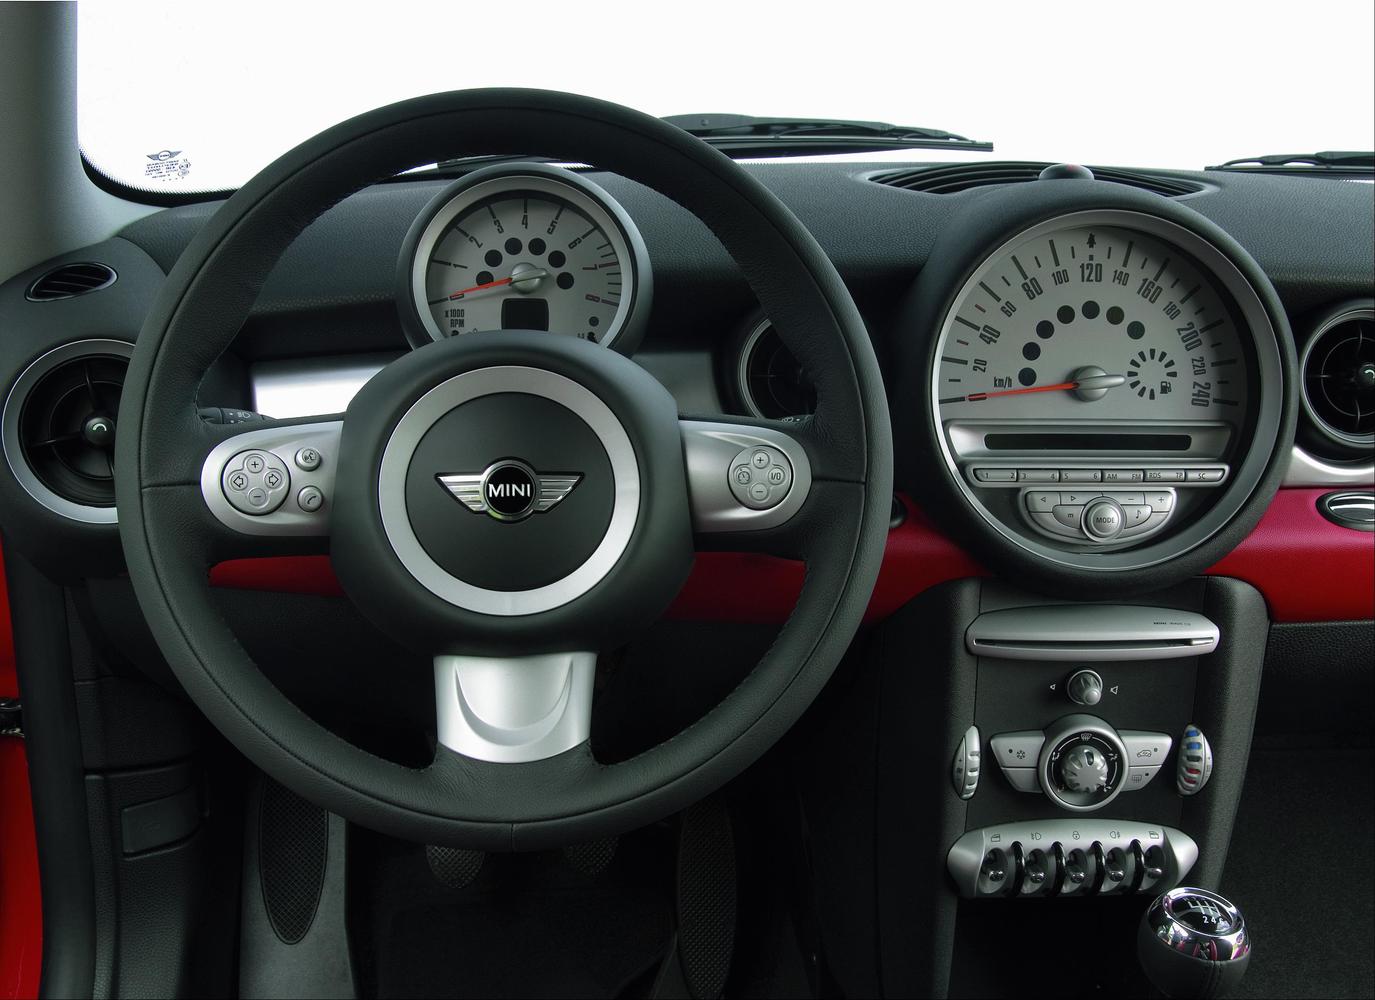 хэтчбек 3 дв. MINI Hatch 2006 - 2010г выпуска модификация 1.6 AT (109 л.с.)